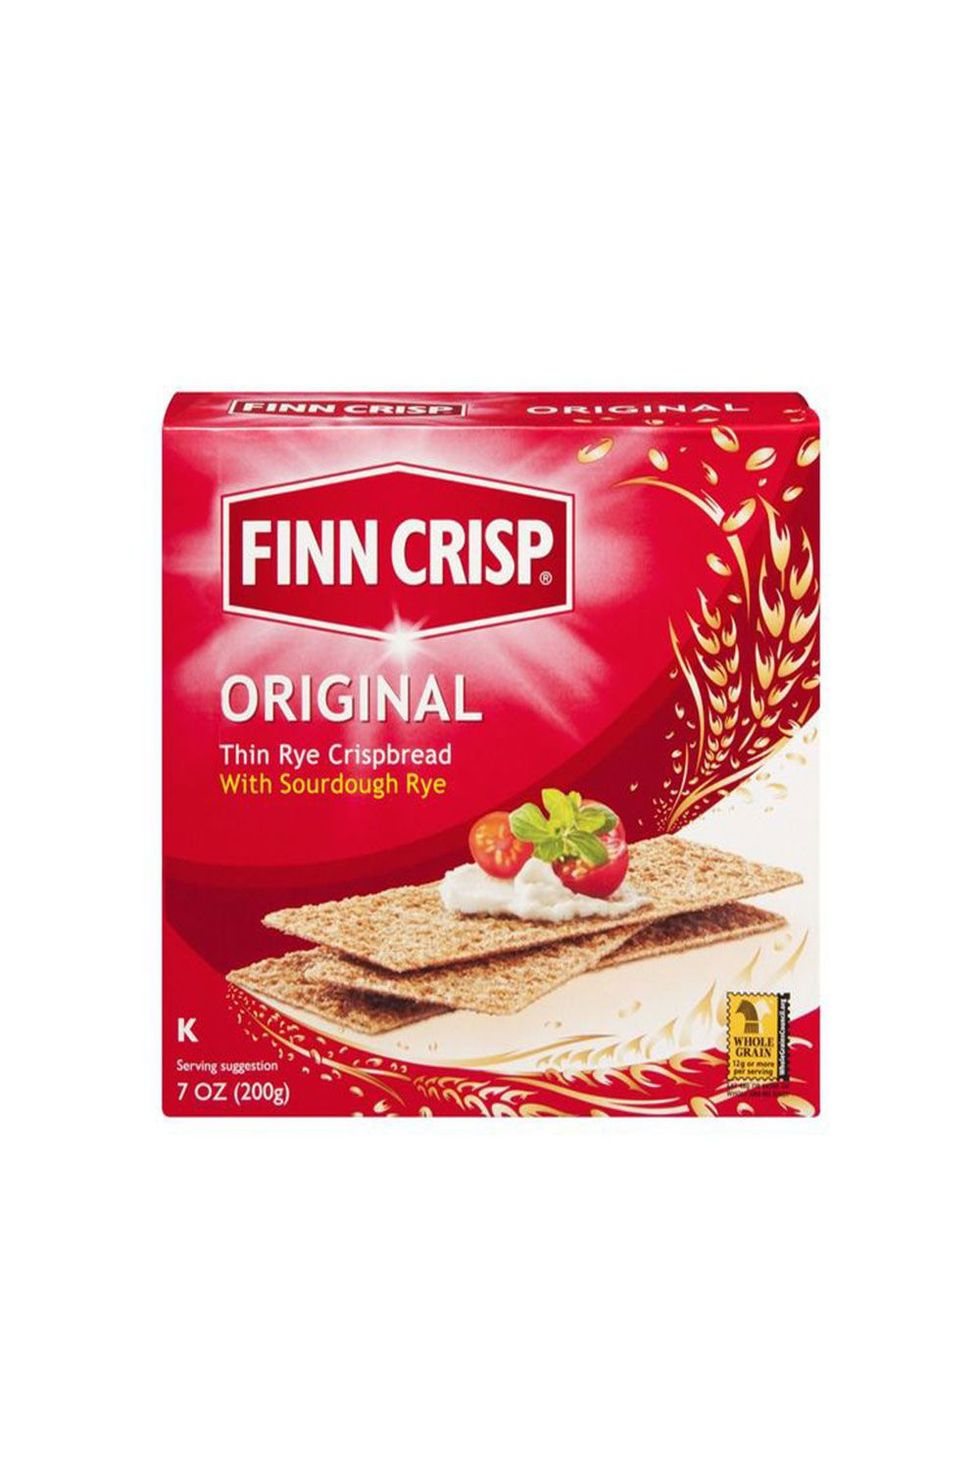 Finn Crisp Thin Rye Crispbread Original